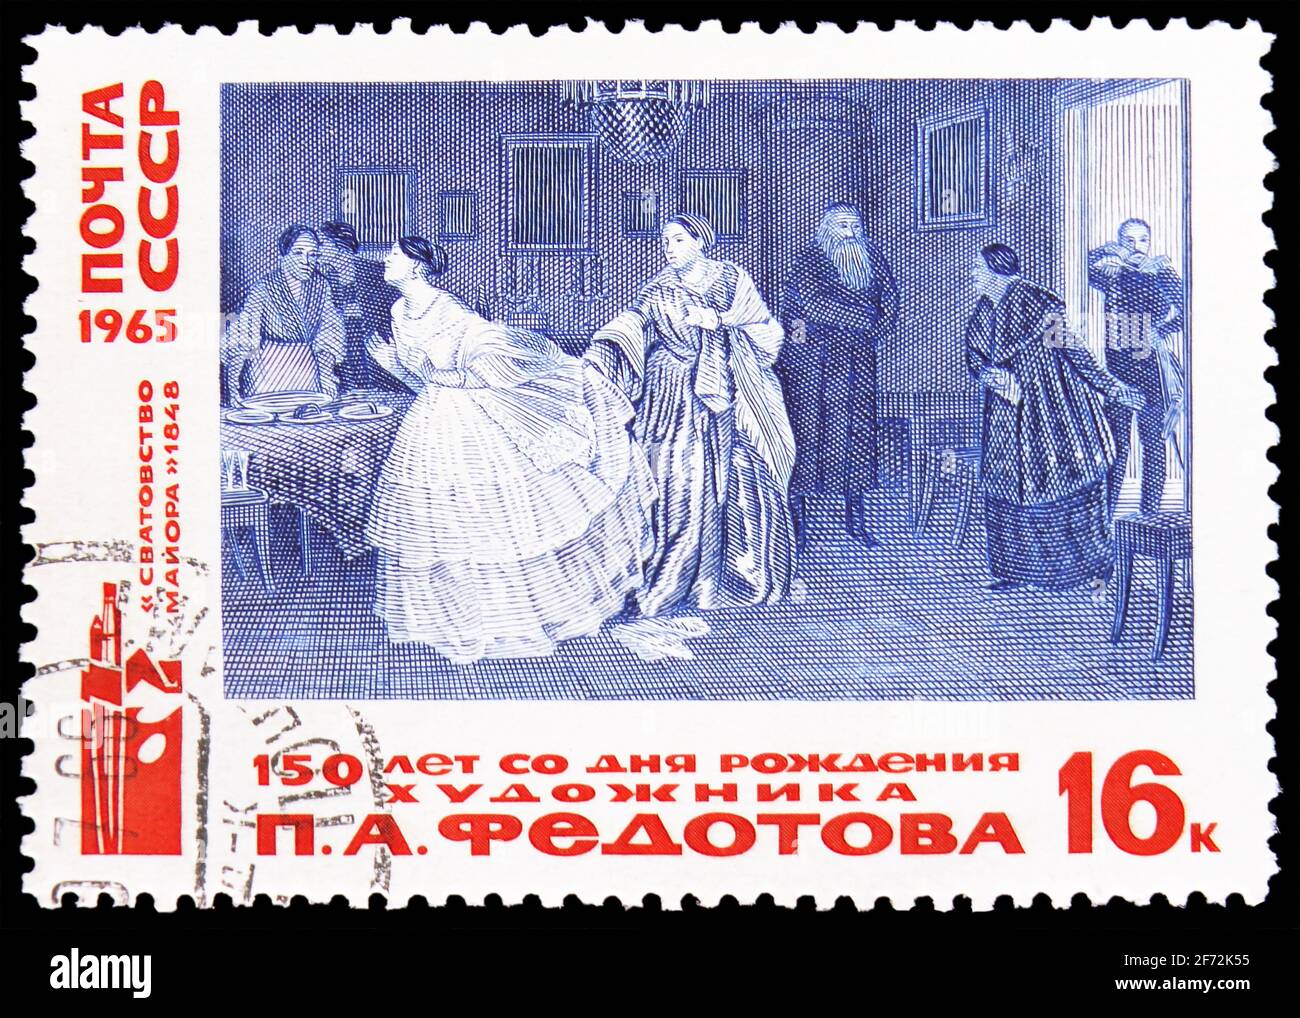 MOSCOU, RUSSIE - 22 DÉCEMBRE 2020: Timbre-poste imprimé en Union soviétique montre la proposition de mariage, Pavel Fedotov (1848), série, vers 1965 Banque D'Images